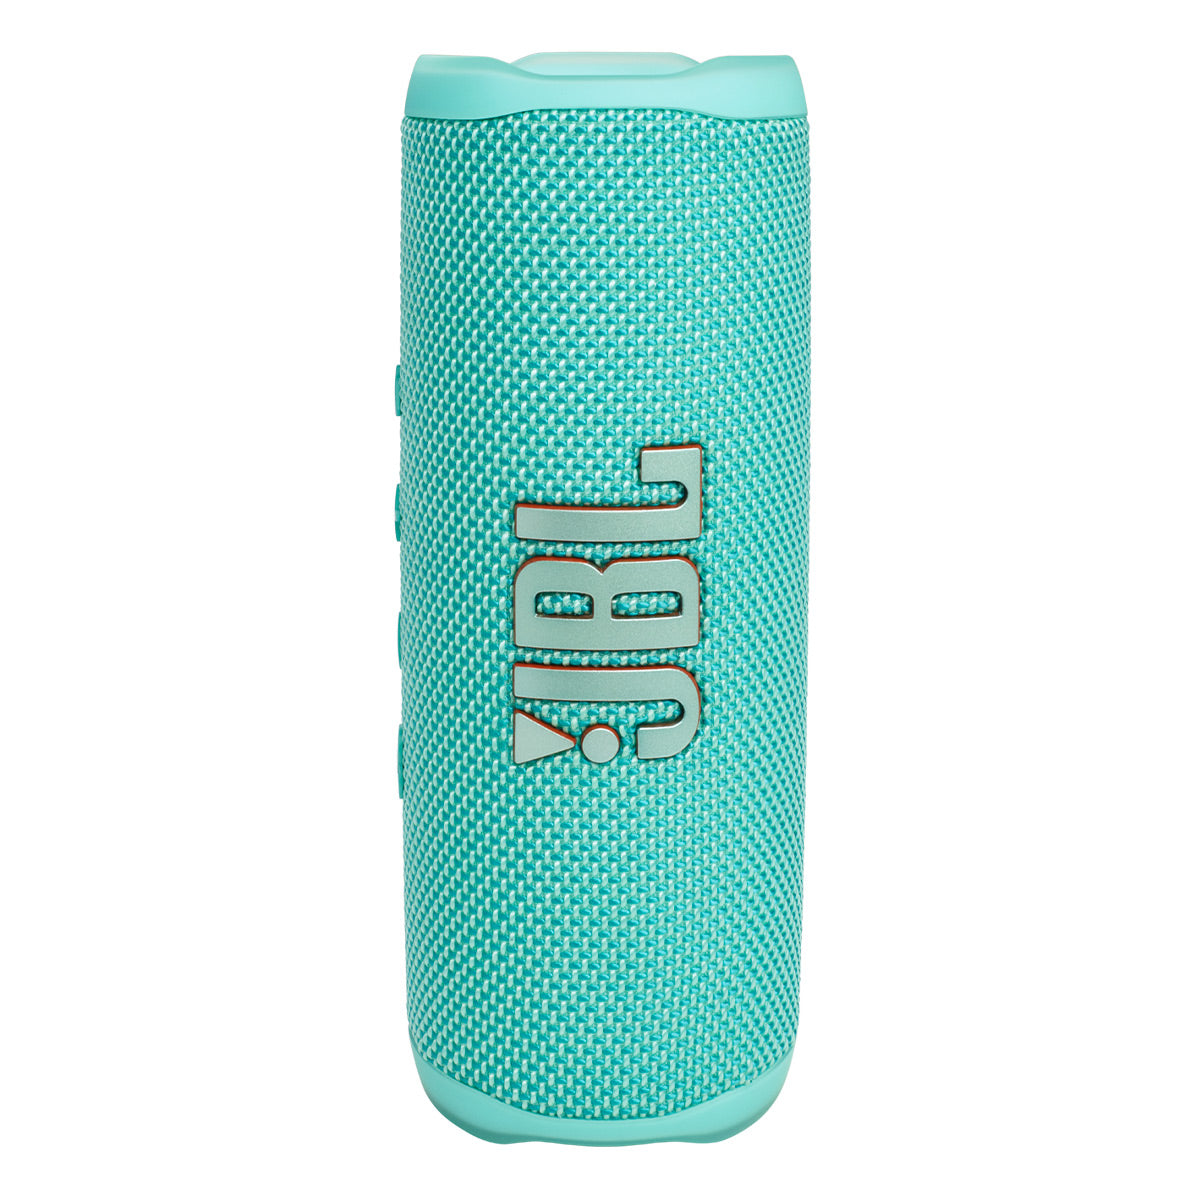 JBL Flip 6 Waterproof Portable Bluetooth Speaker - Pair (Teal)